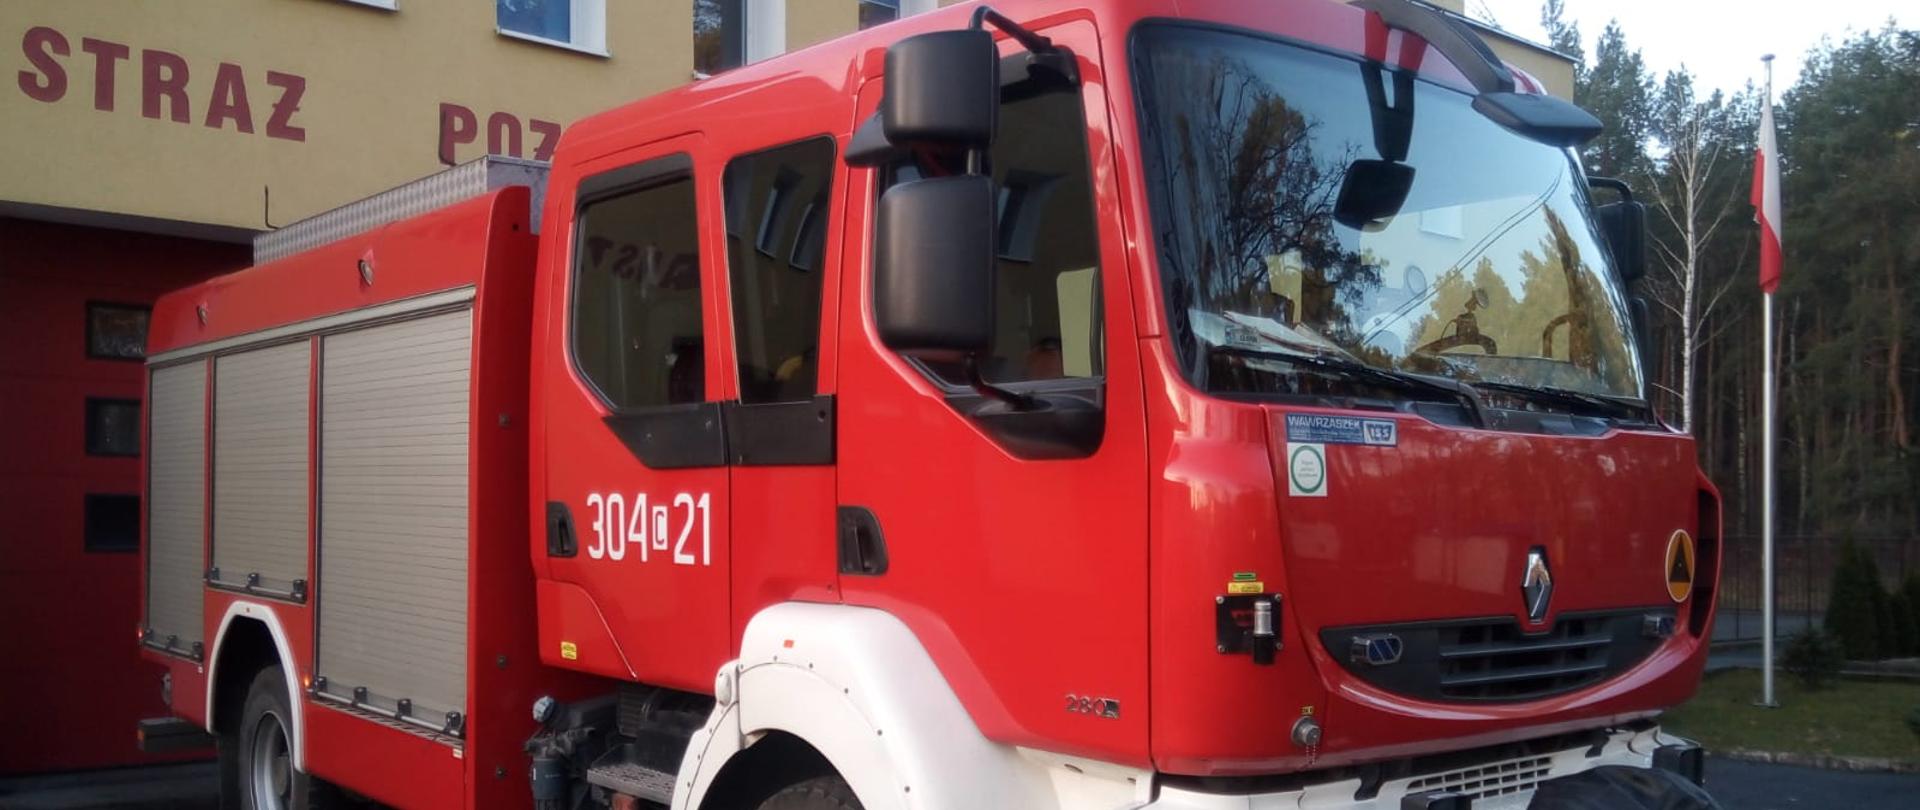 Samochód strażacki ciężarowy ratowniczo-gaśniczy Jednostki Ratowniczo-Gaśniczej nr 4 w Bydgoszczy, podwozie marki Renault, w tle budynek jednostki.